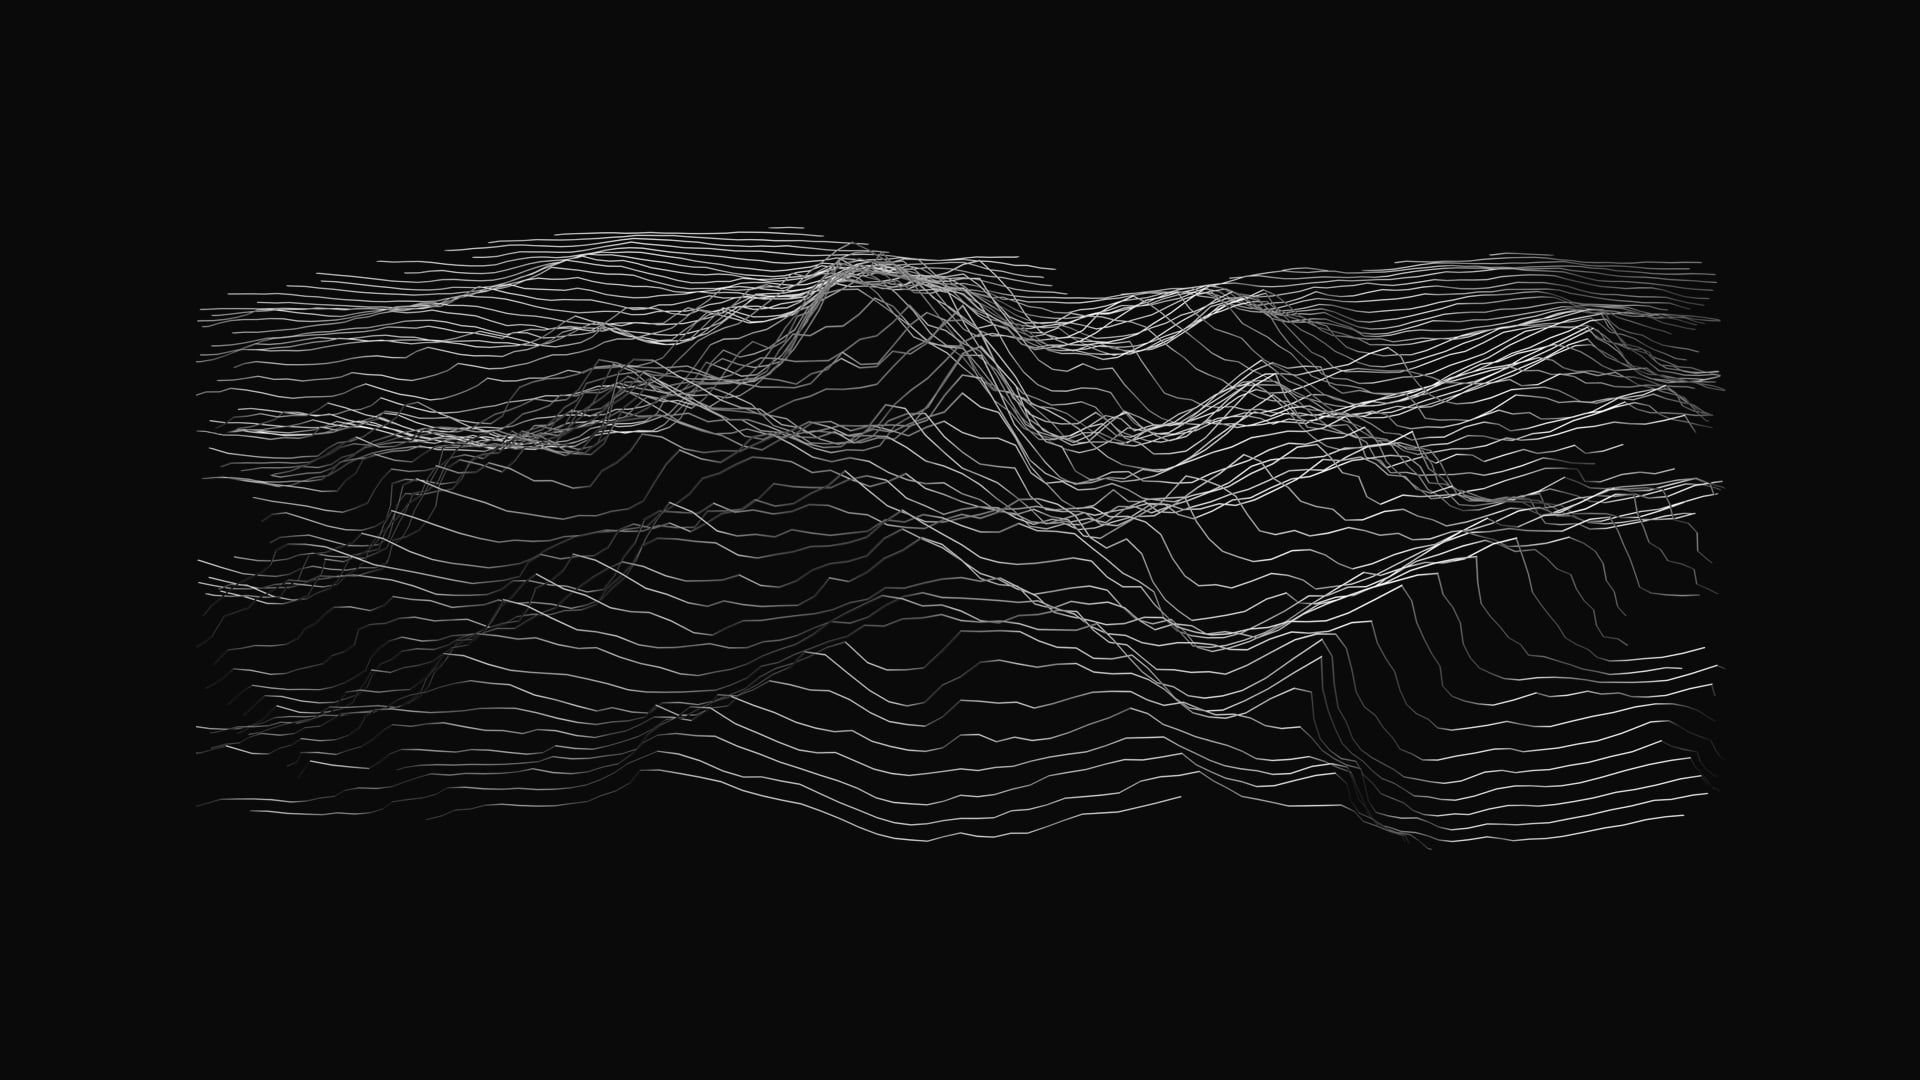 Topographic wallpaper engine. Графические линии. Абстрактные линии на черном фоне. Линии Минимализм. Абстракция Минимализм.